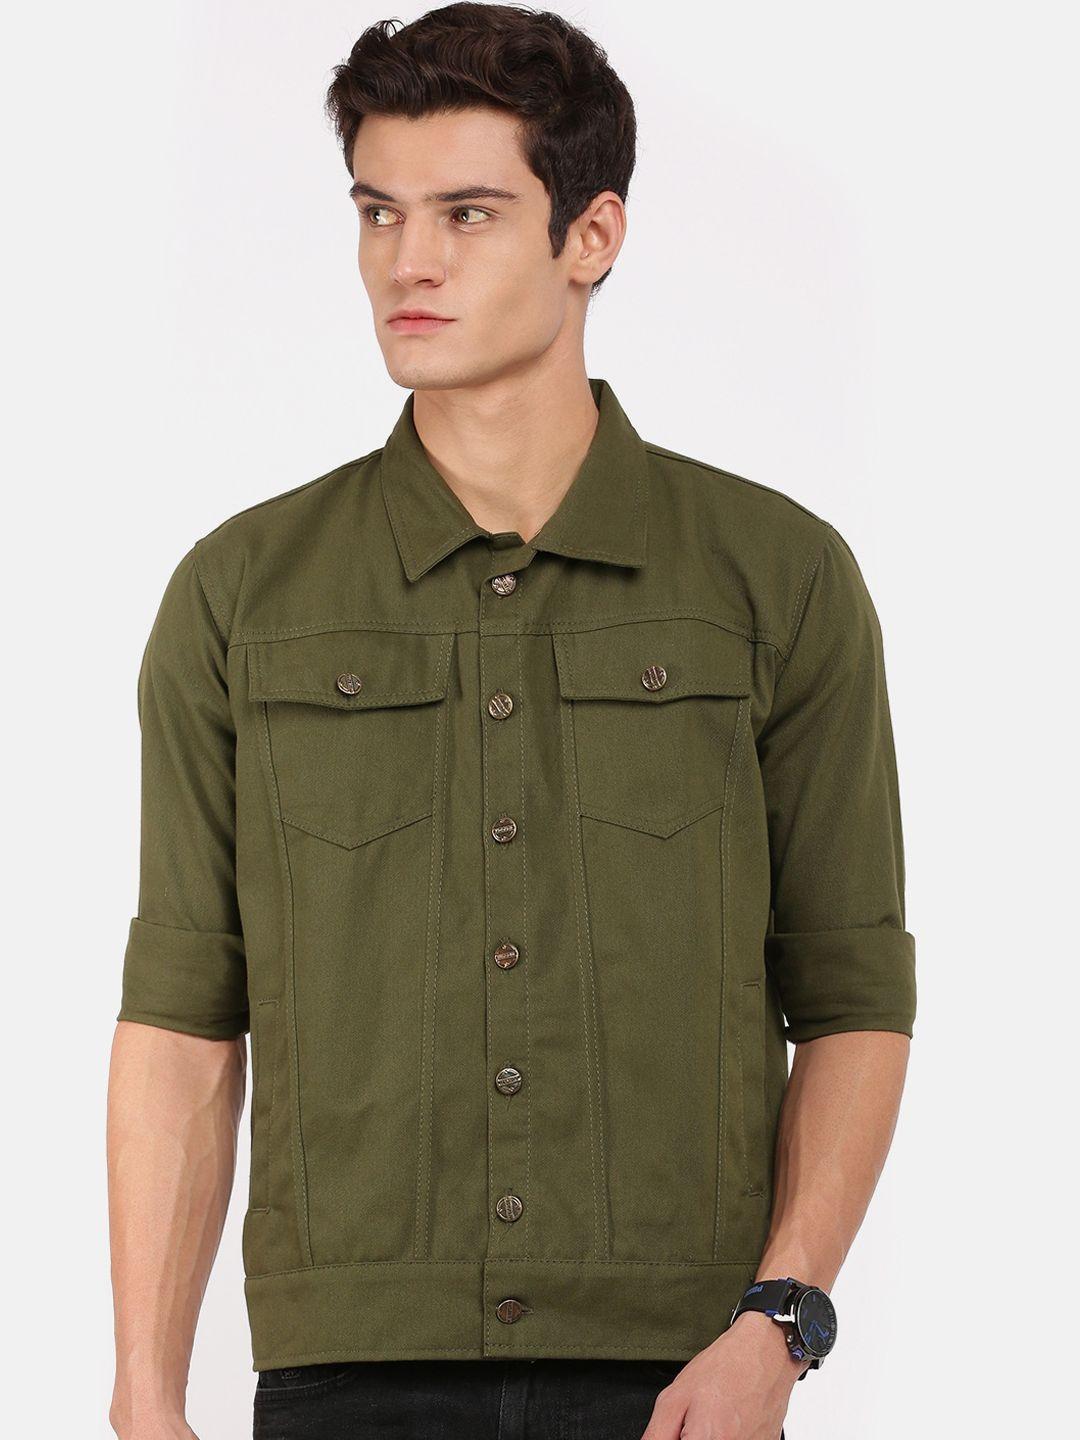 voxati men olive green longline denim jacket with embroidered